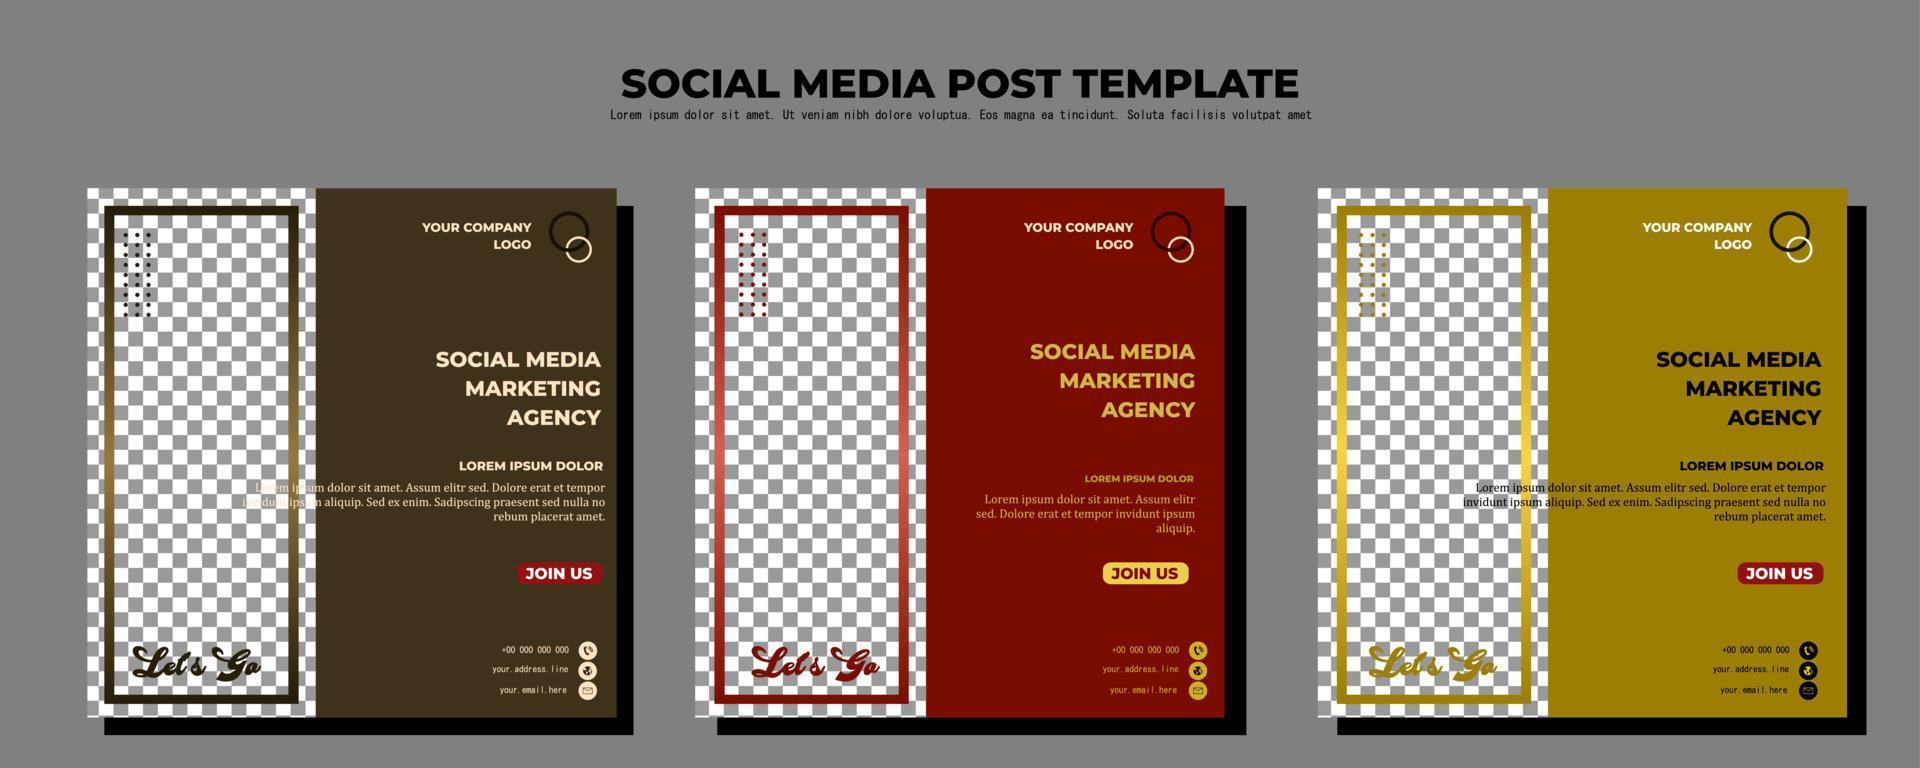 brun röd och gul vektor inläggsmall för sociala medier, vektorkonstillustration och text, enkel design